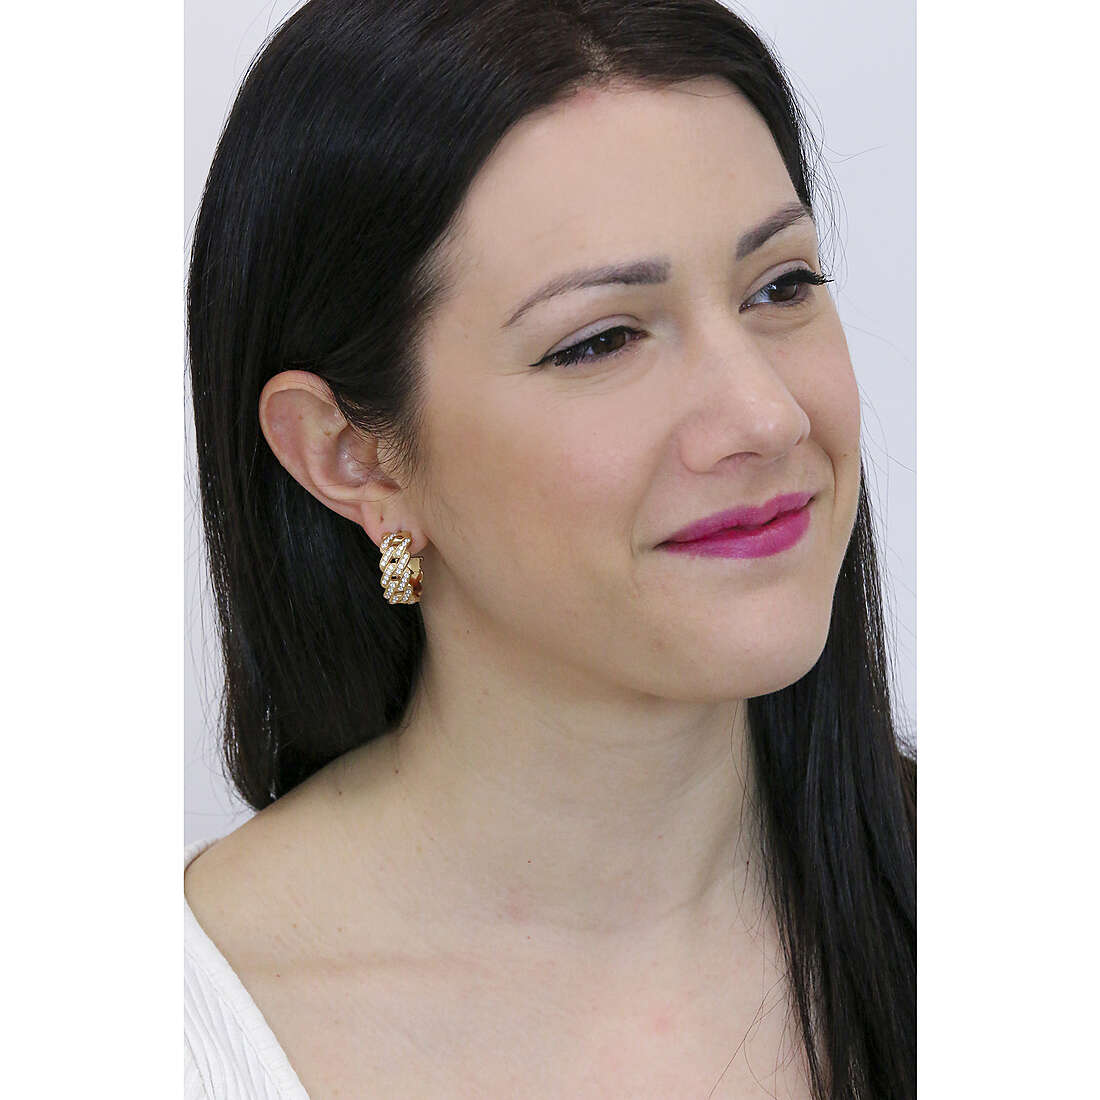 Bliss earrings Royale woman 20090111 wearing